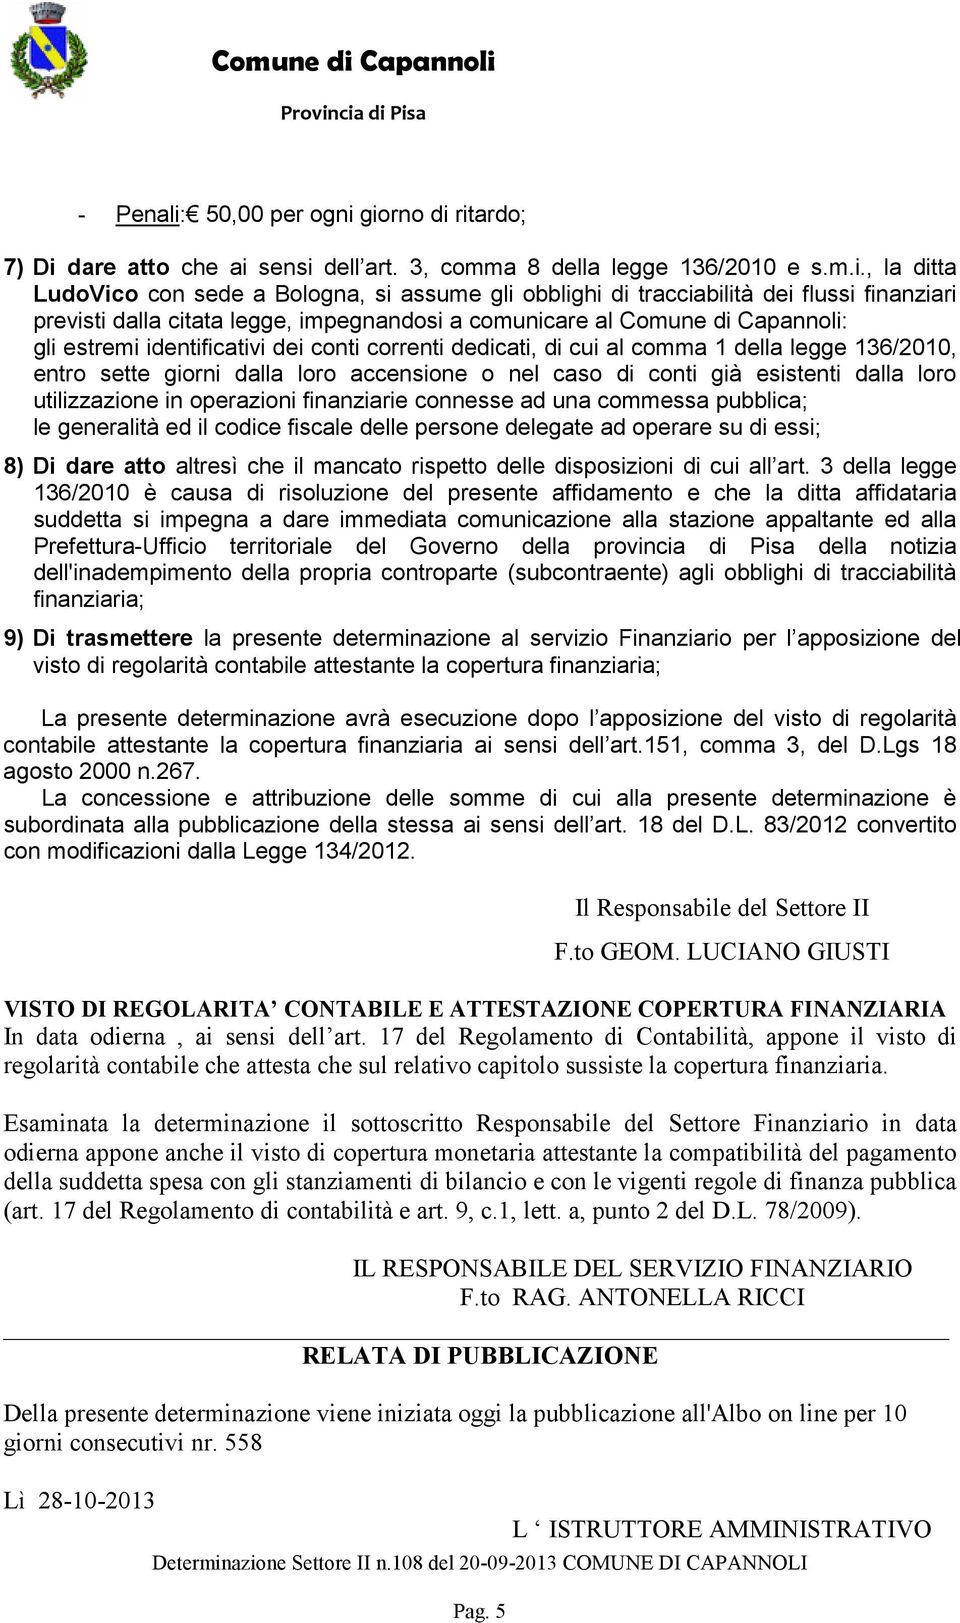 giorno di ritardo; 7) Di dare atto che ai sensi dell art. 3, comma 8 della legge 136/2010 e s.m.i., la ditta LudoVico con sede a Bologna, si assume gli obblighi di tracciabilità dei flussi finanziari